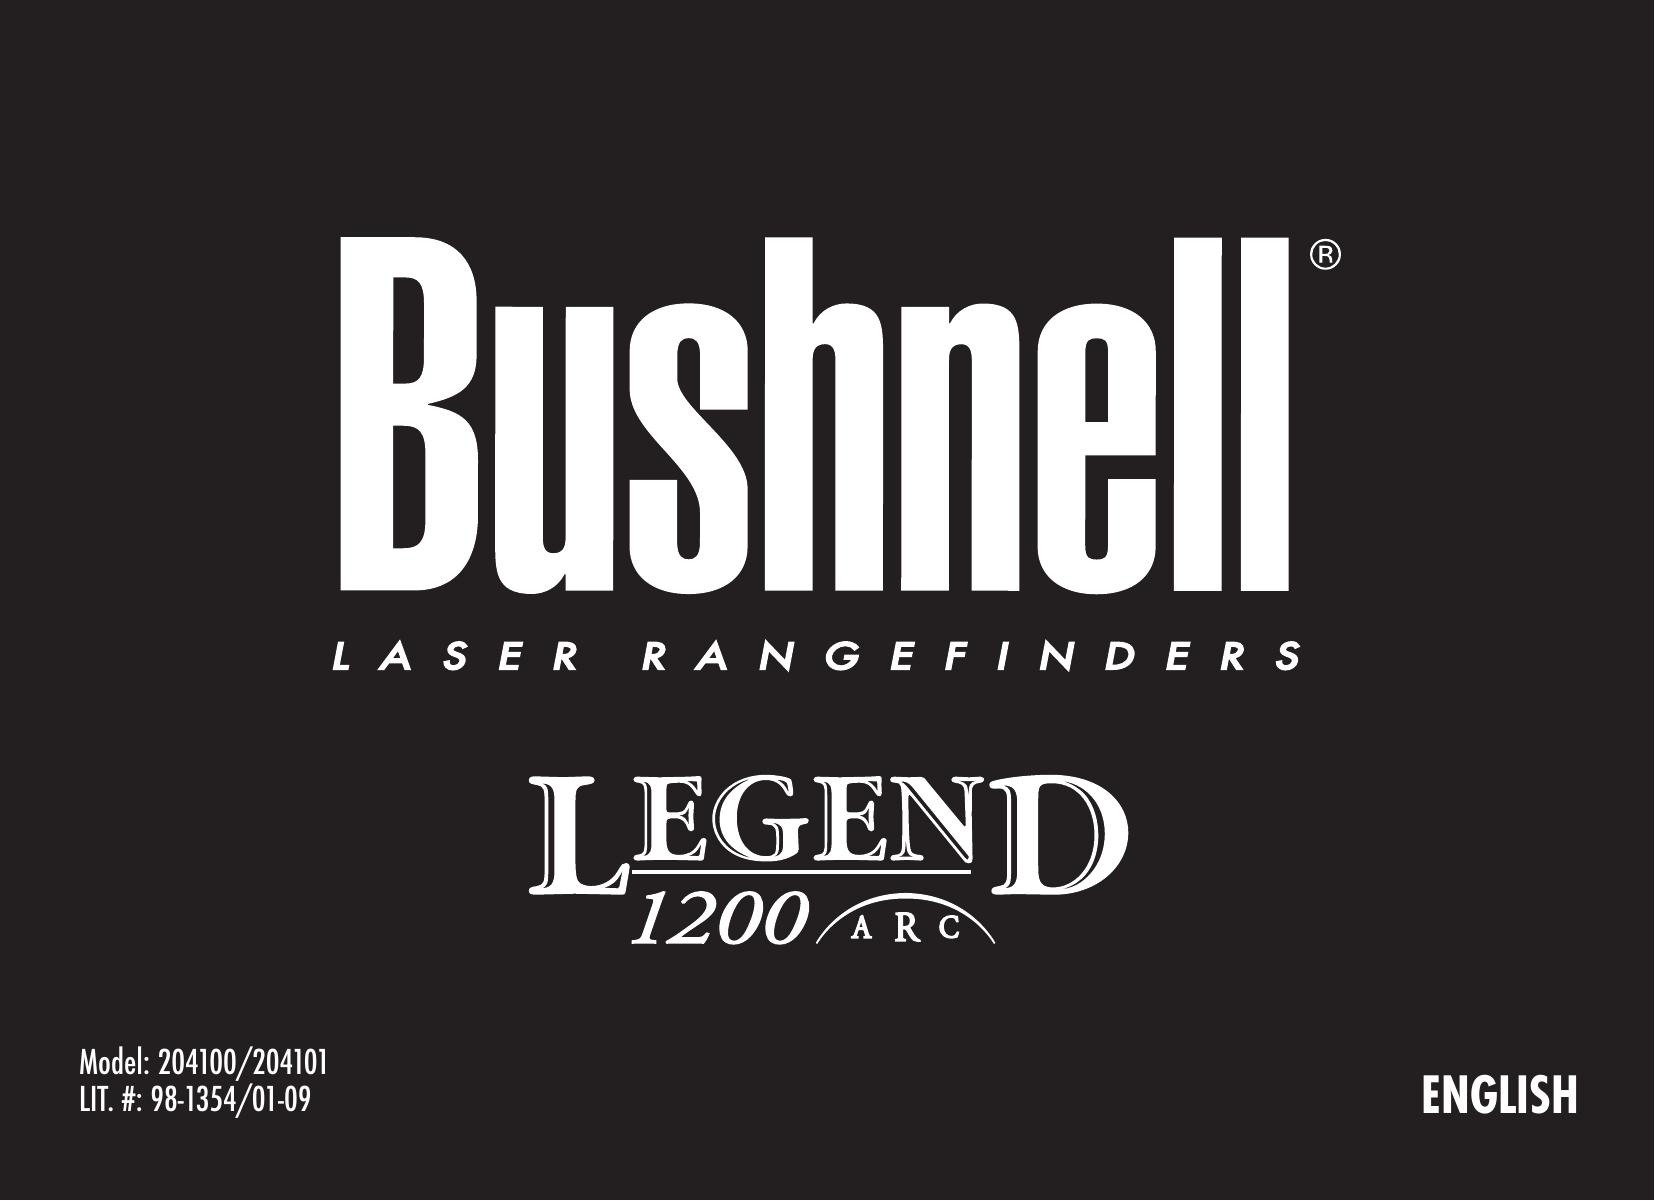 Bushnell 204101 Film Camera User Manual